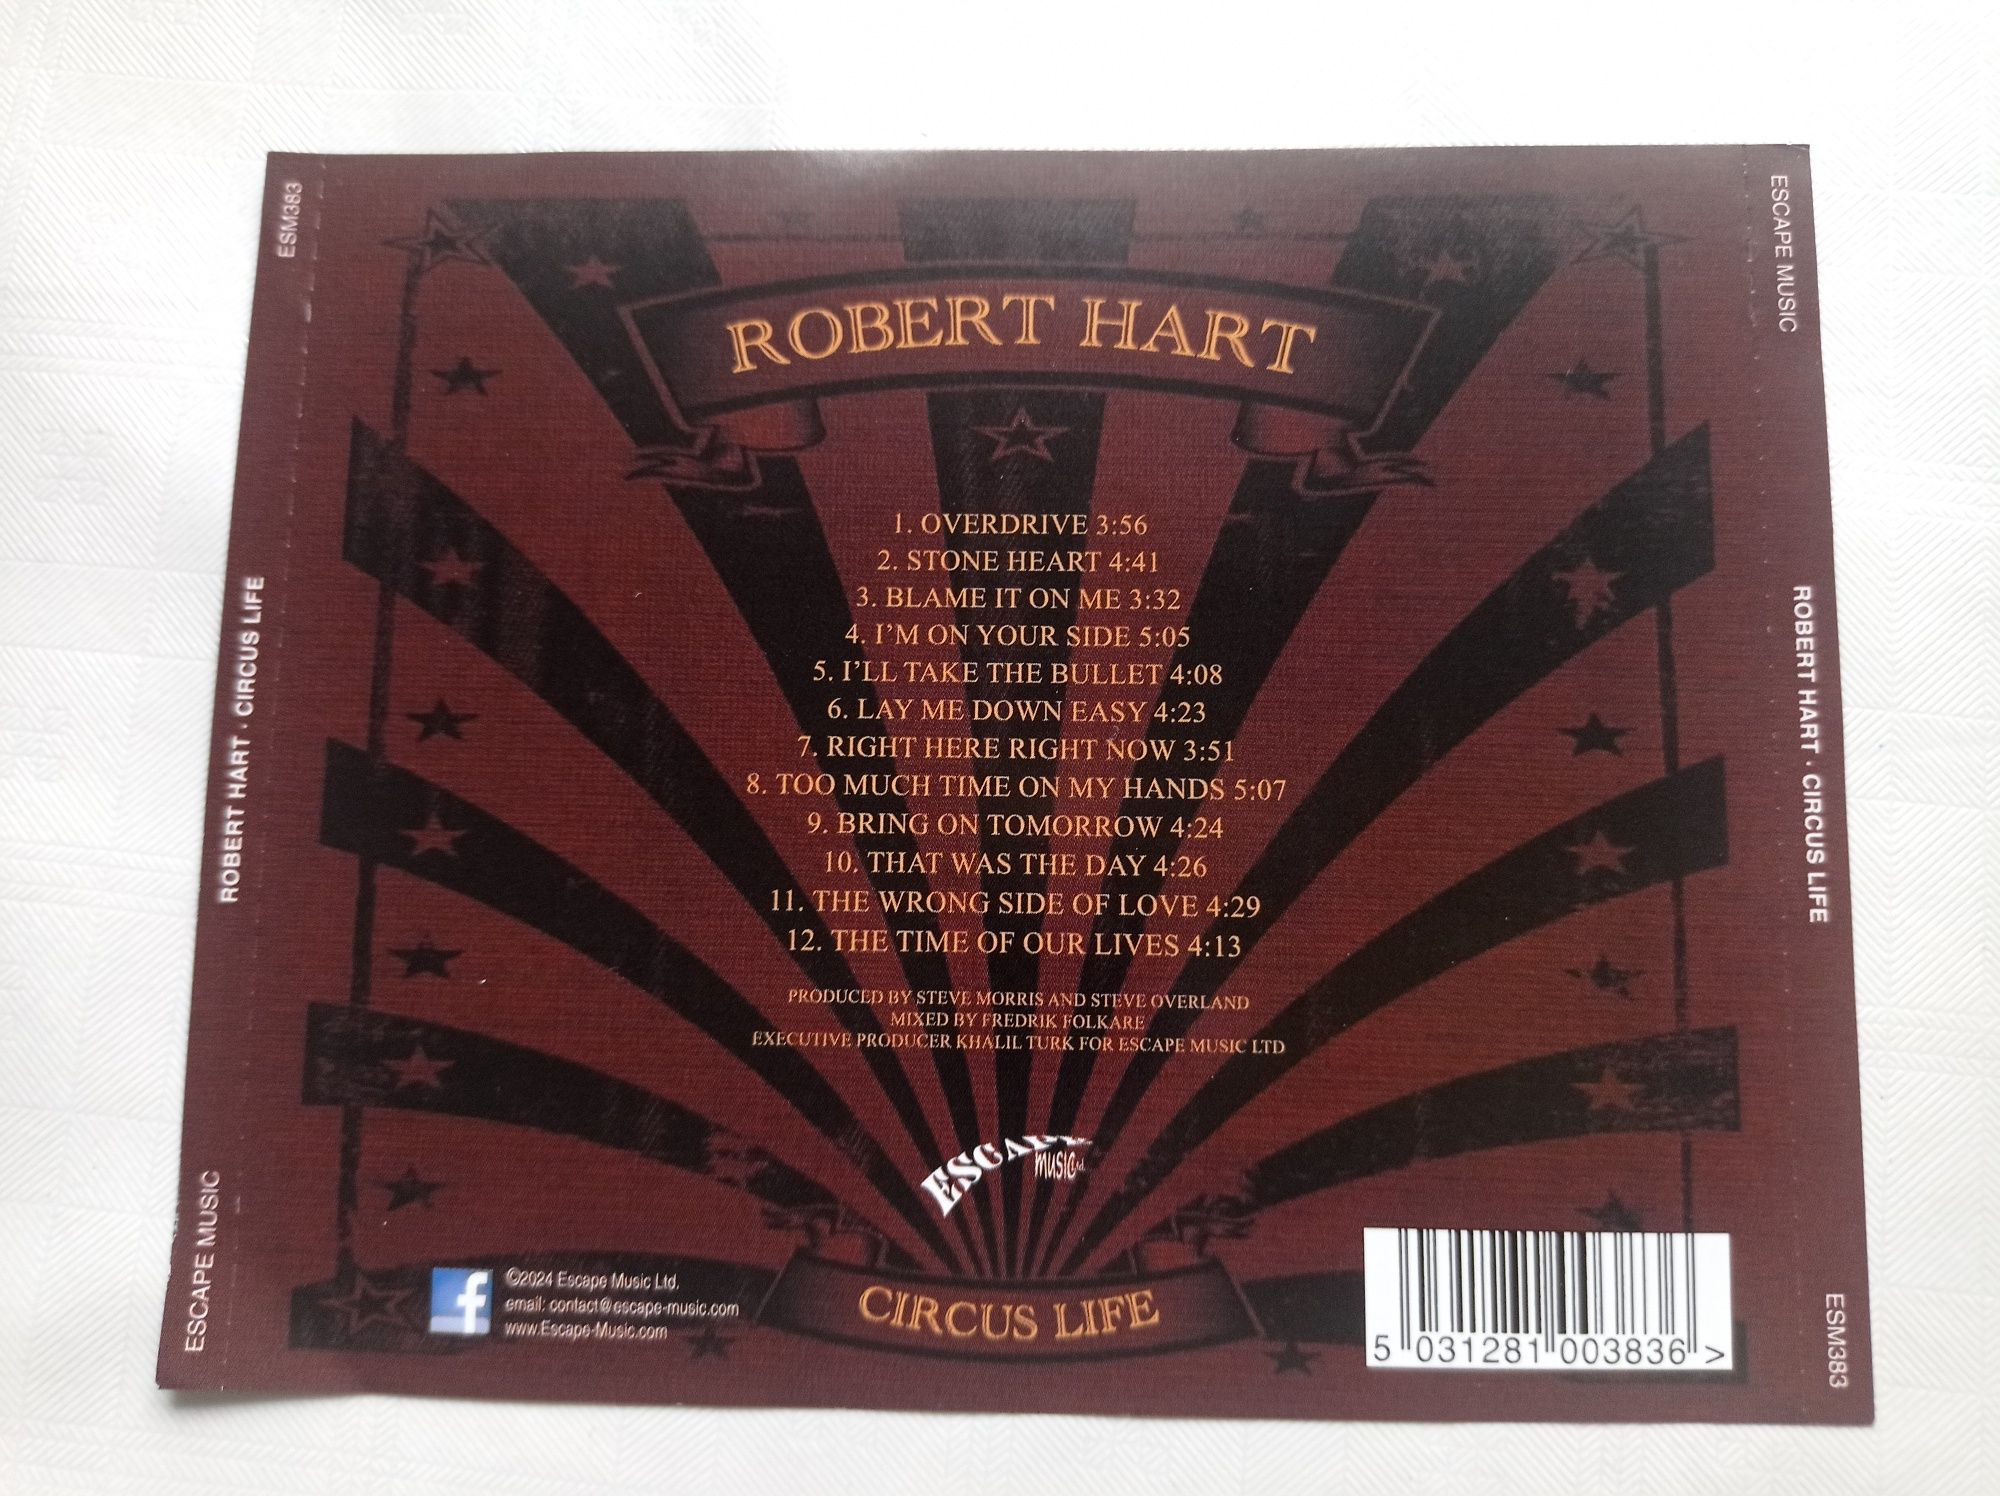 Robert Hart - Circus life